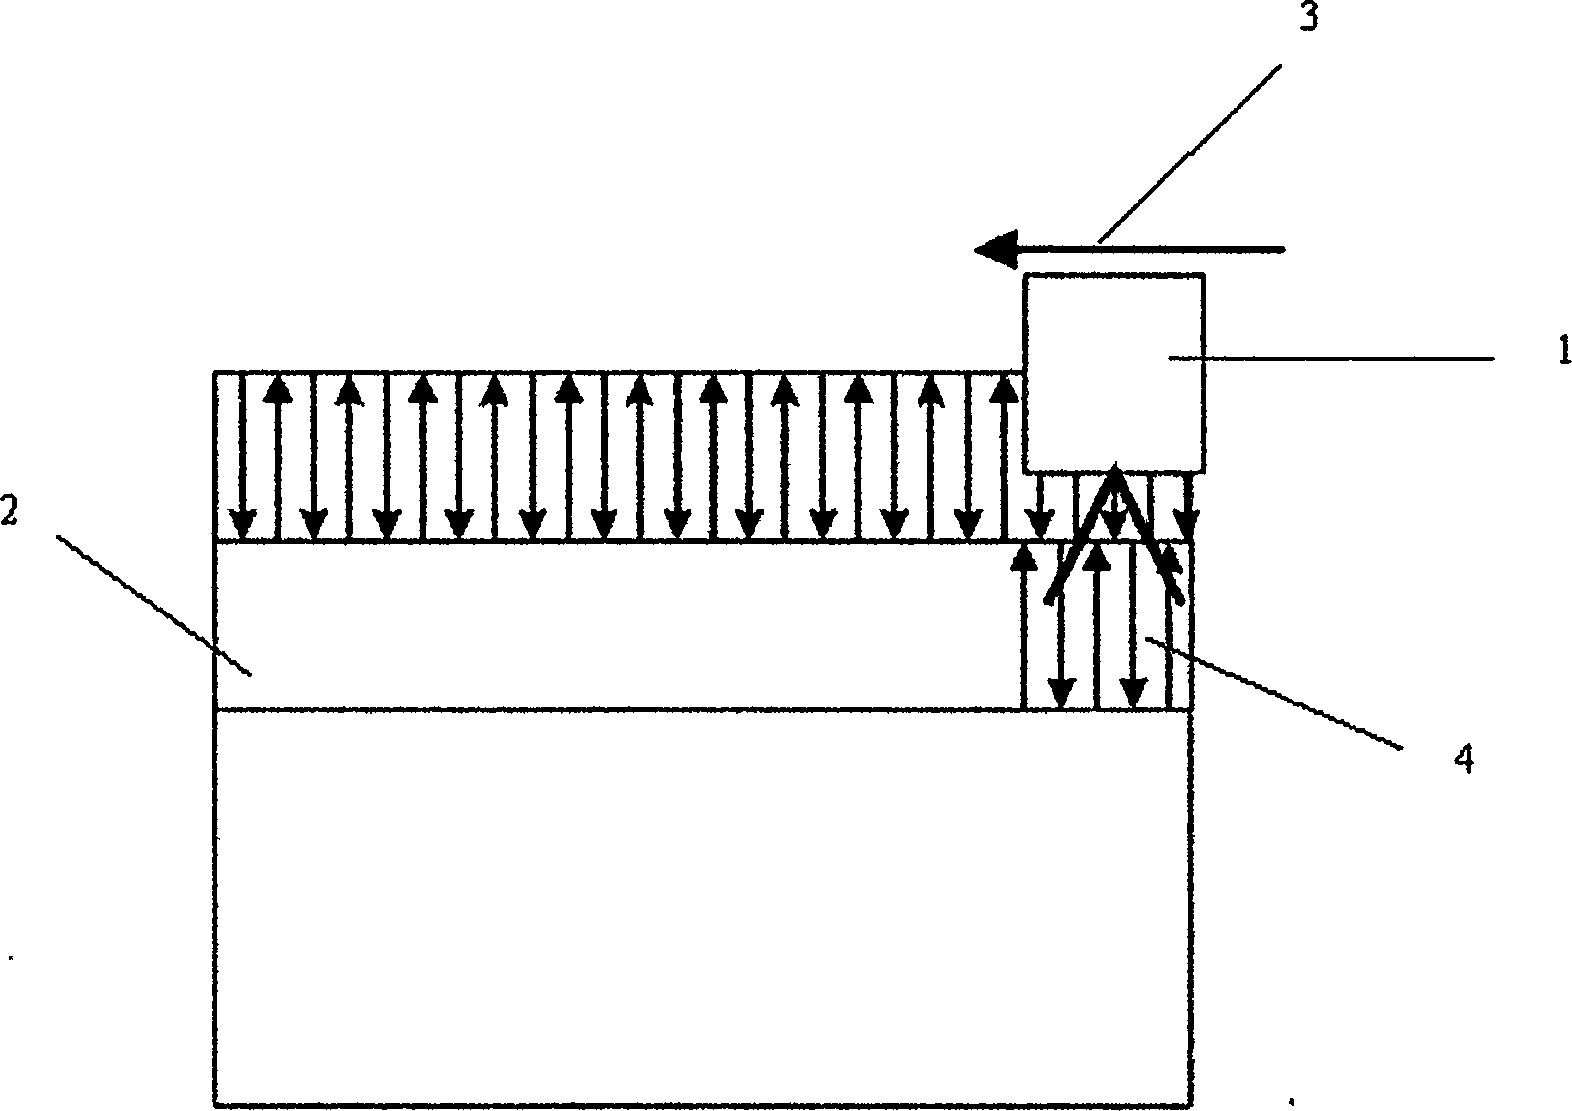 Large-area laser engraving method